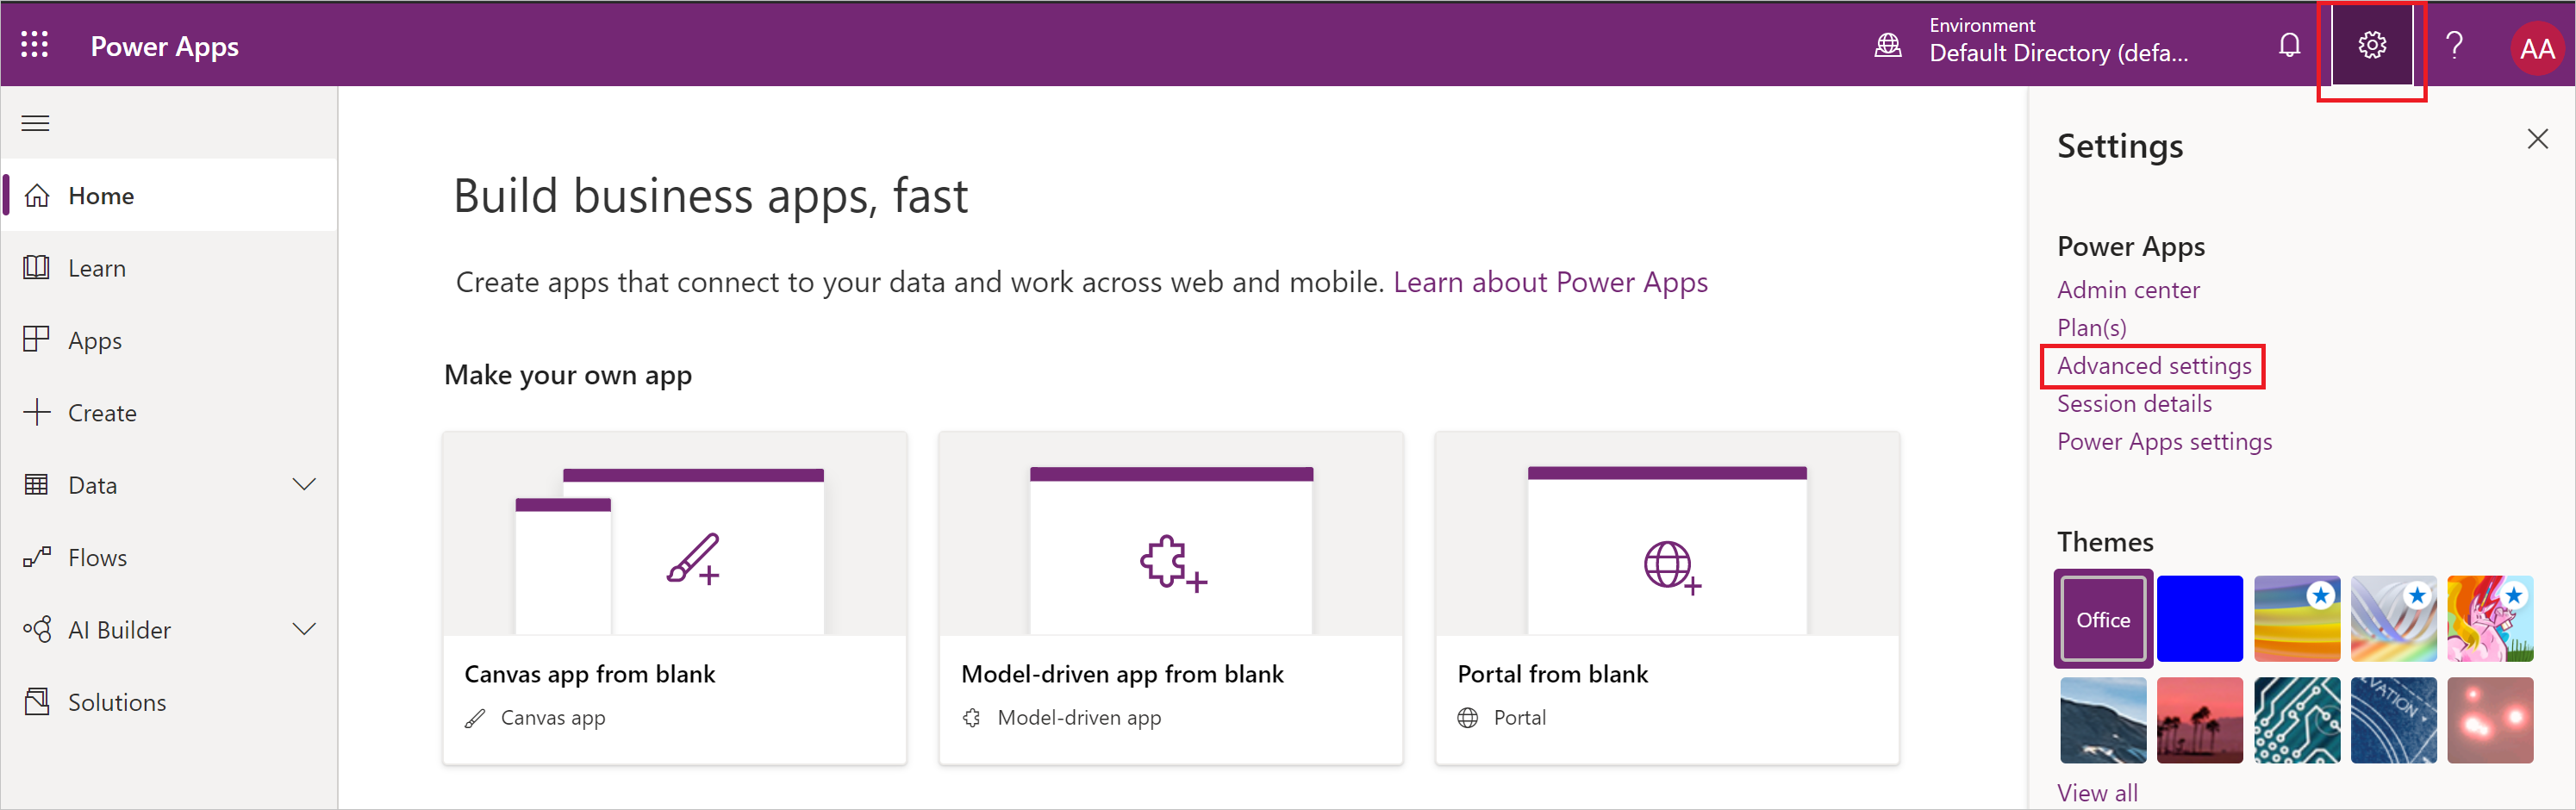 Captura de pantalla del menú de configuración de Power Apps con Configuración avanzada resaltado.